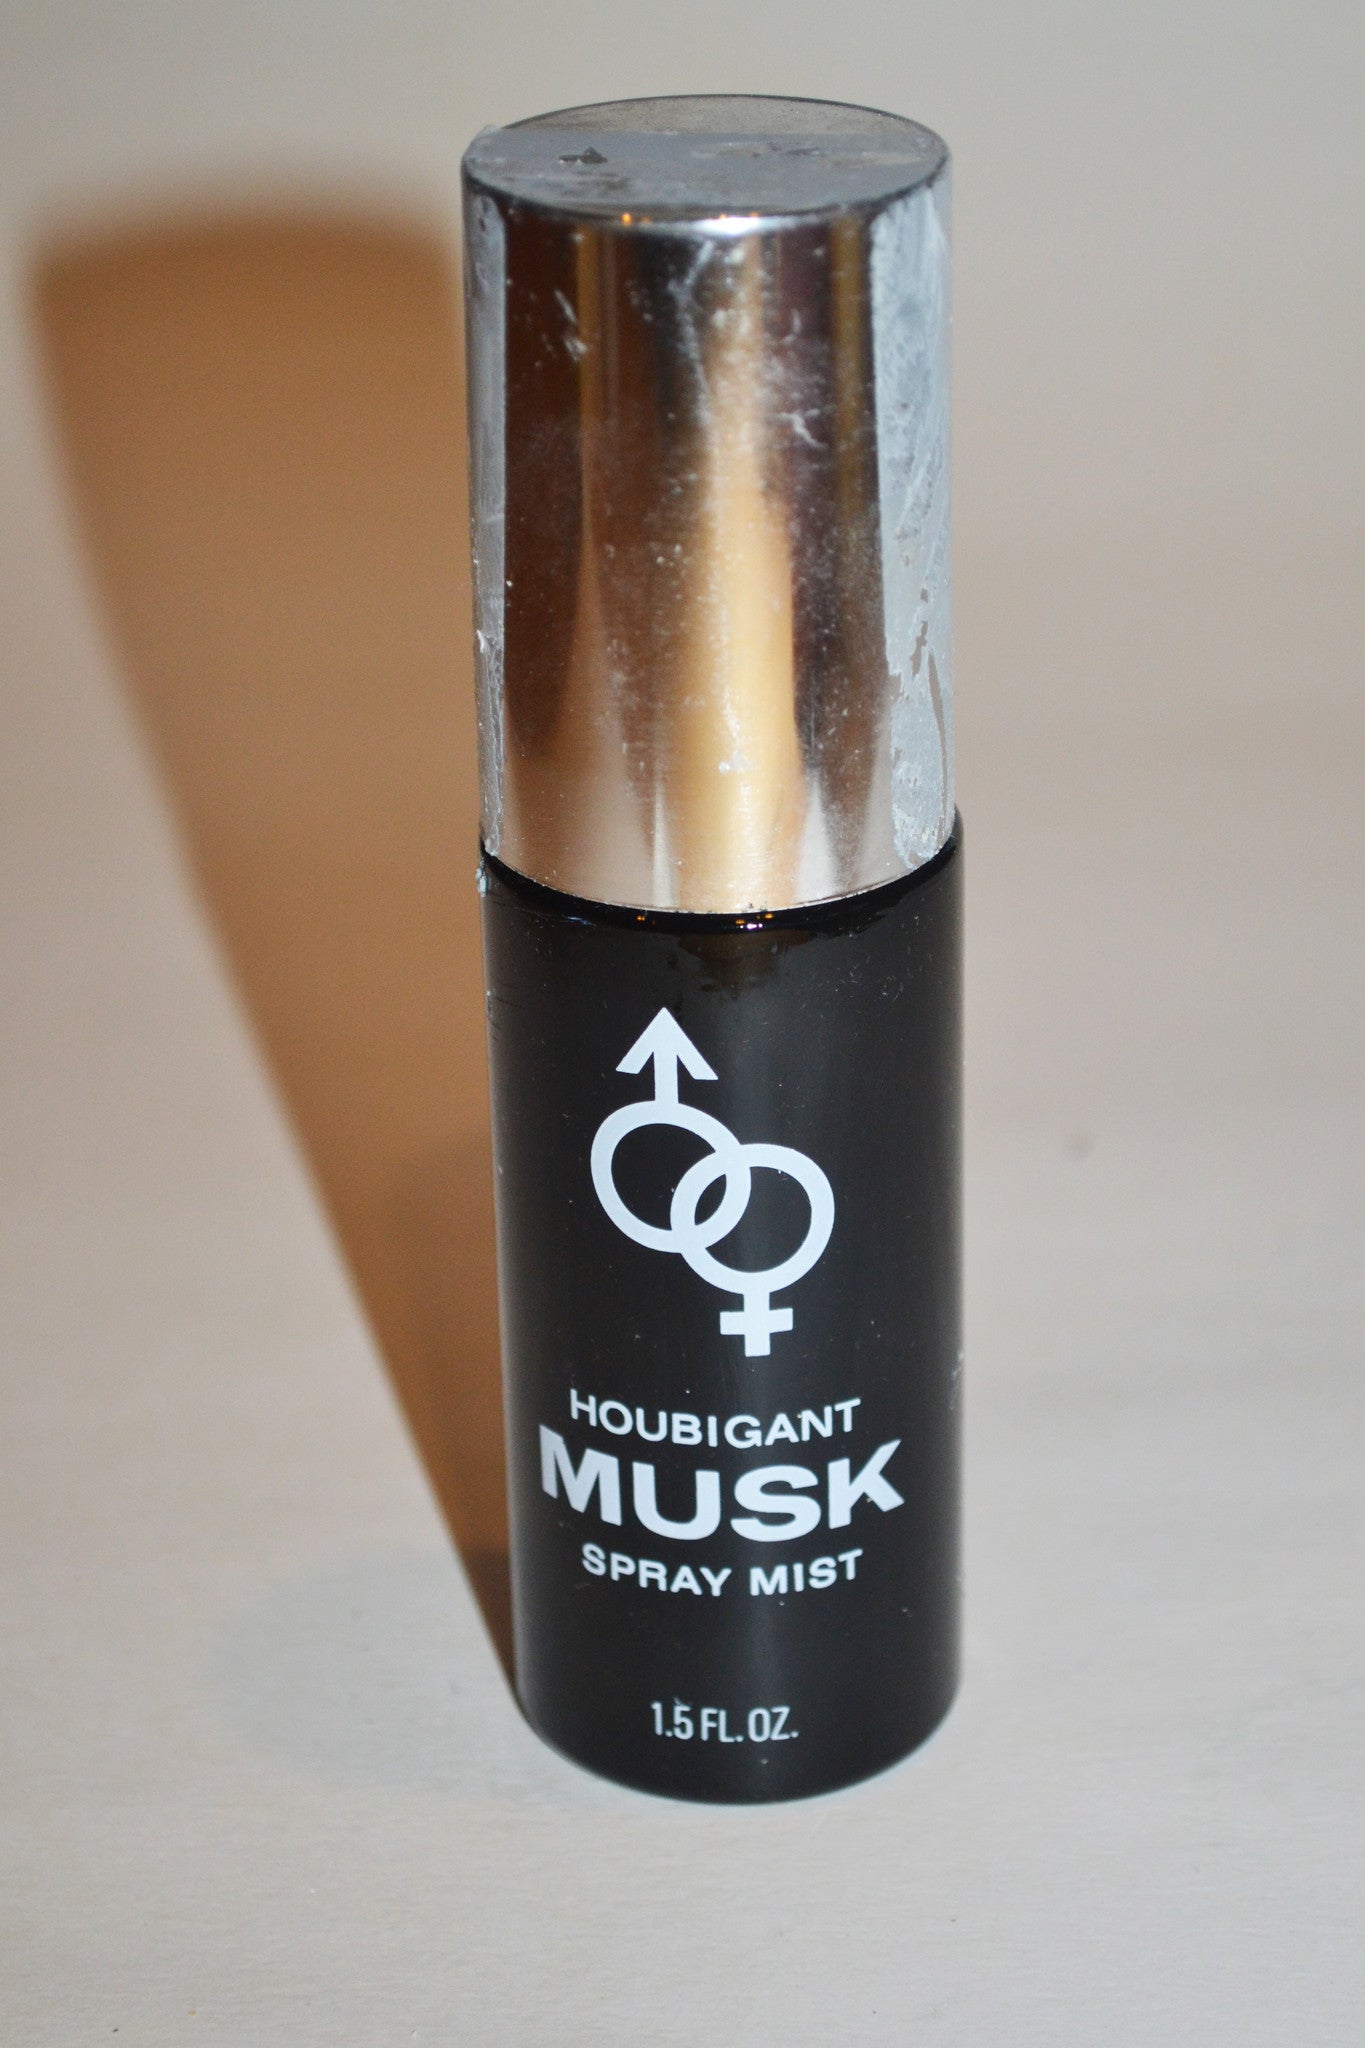 Vintage Musk Spray Mist By Houbigant-Alyssa Ashley